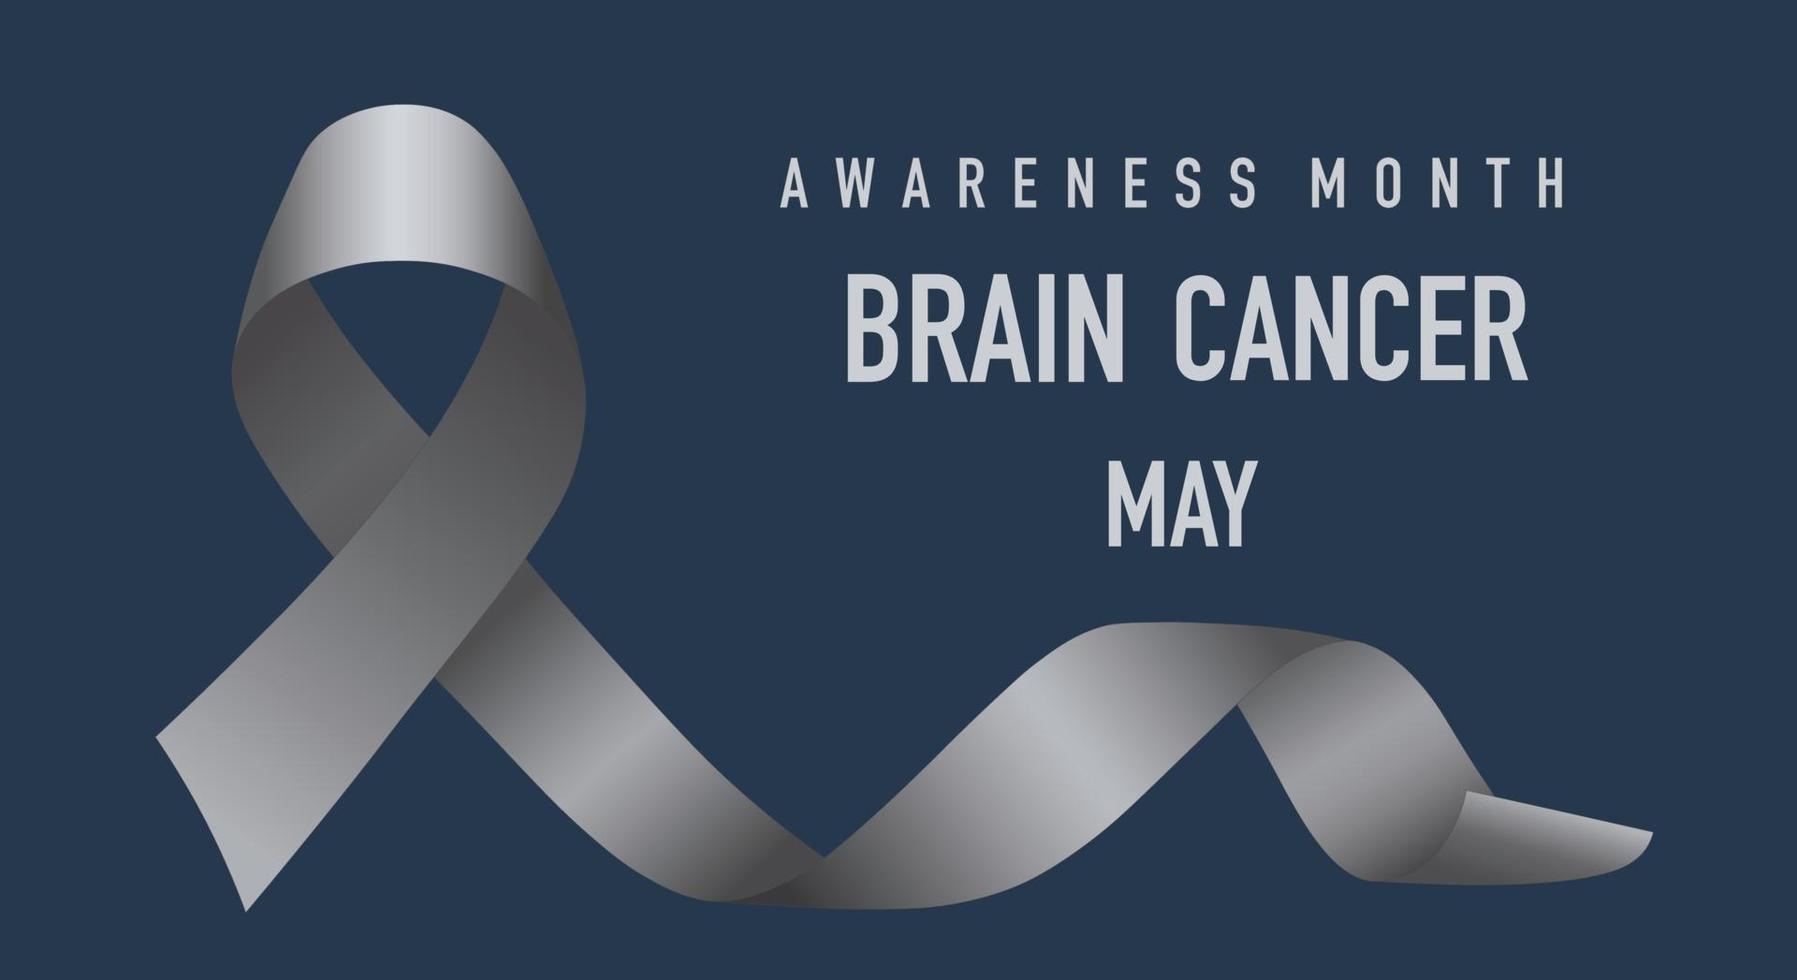 medvetenhet om hjärncancer. hopp koncept. firas i maj. realistiskt grått band på en mörkblå bakgrund. affisch. vektor illustration